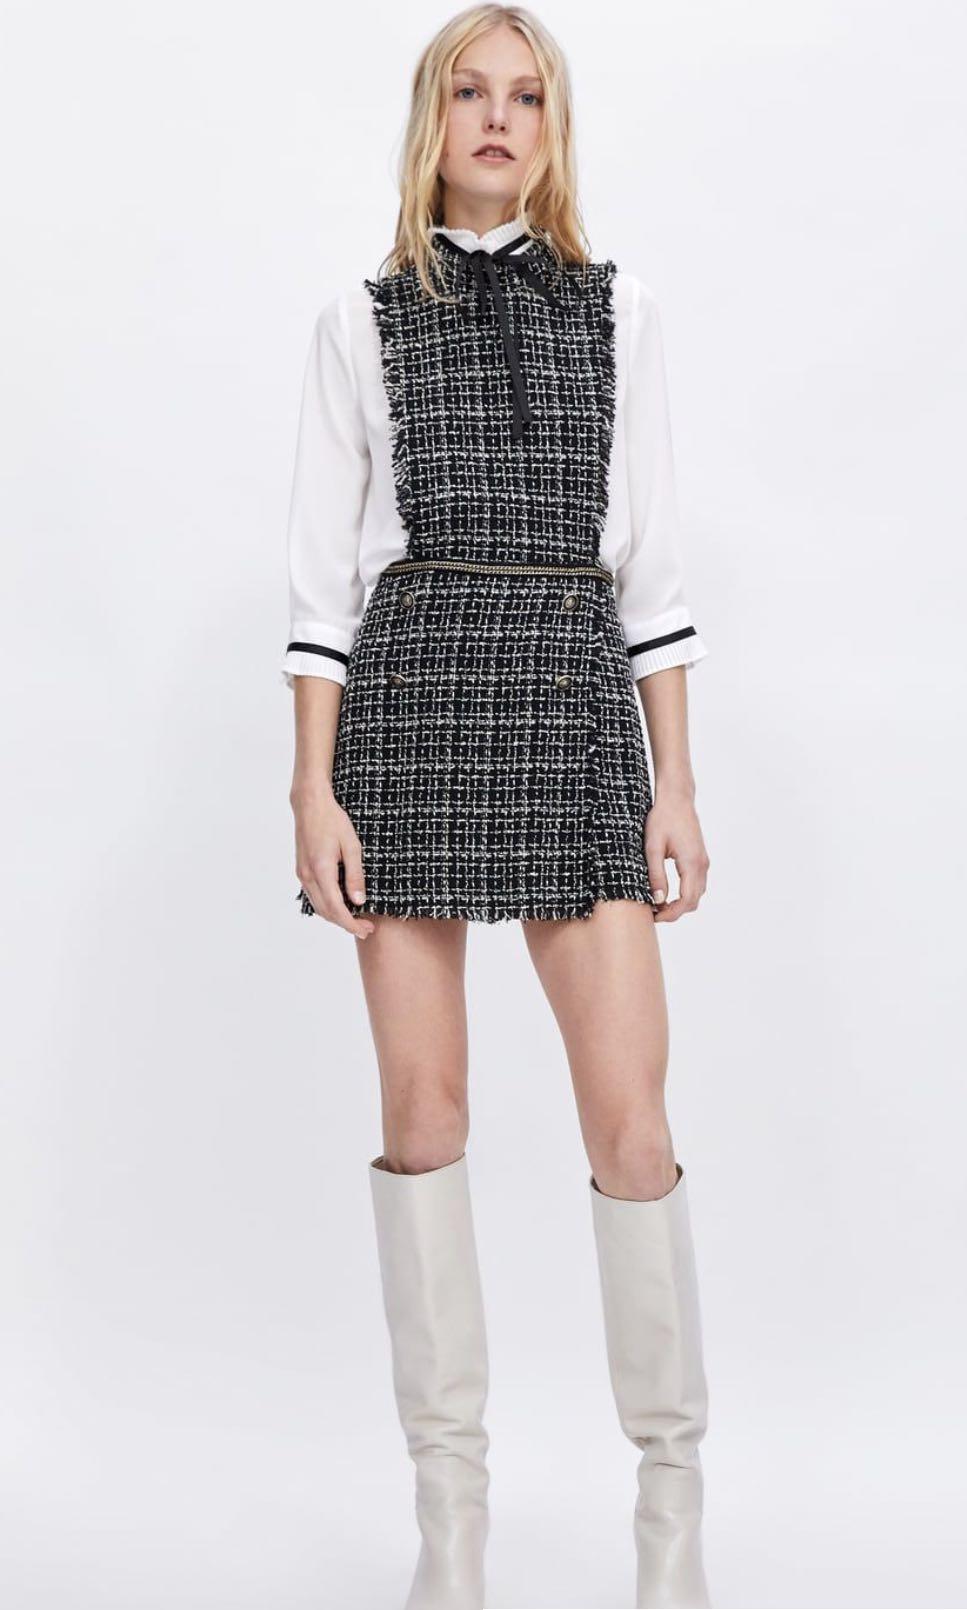 M S L Zara New F/W 2020 White Tweed Jumpsuit Dress Size XS 